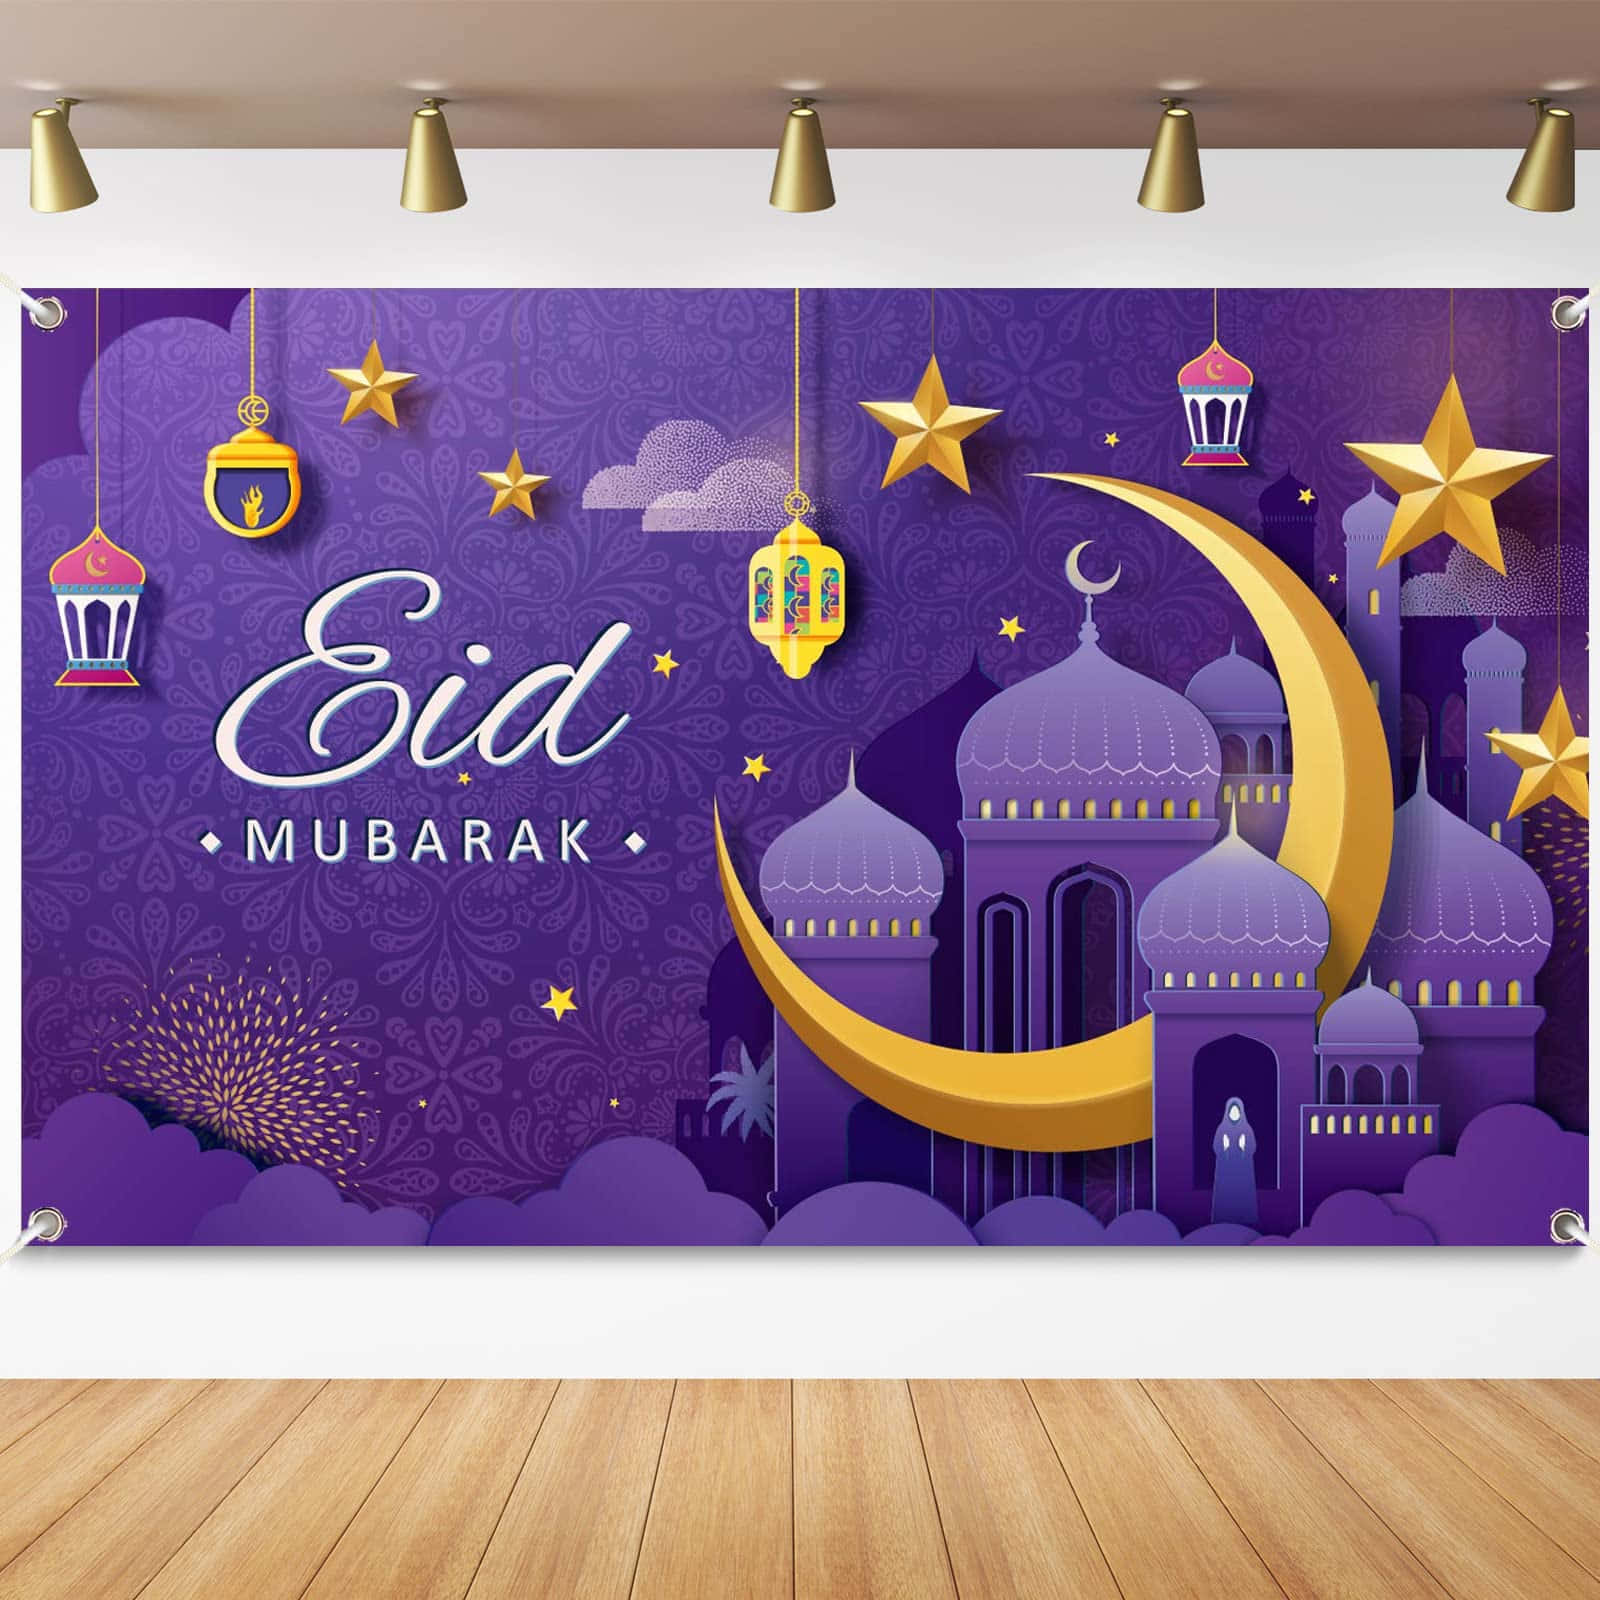 Visender Vores Varme Ønsker Med Dette Smukke Eid Mubarak Design!